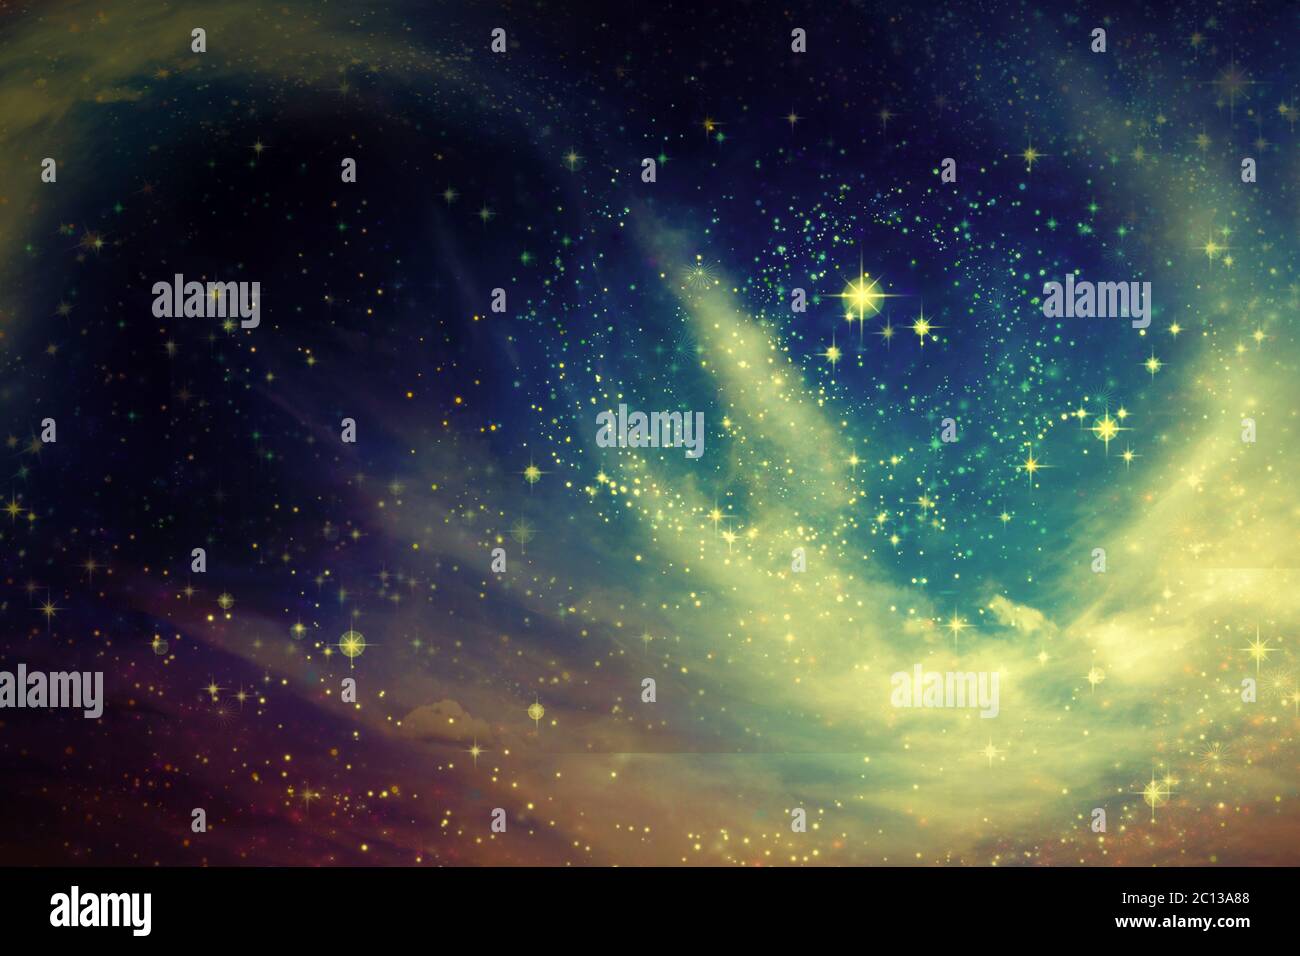 Nuvola di stelle immagini e fotografie stock ad alta risoluzione - Alamy